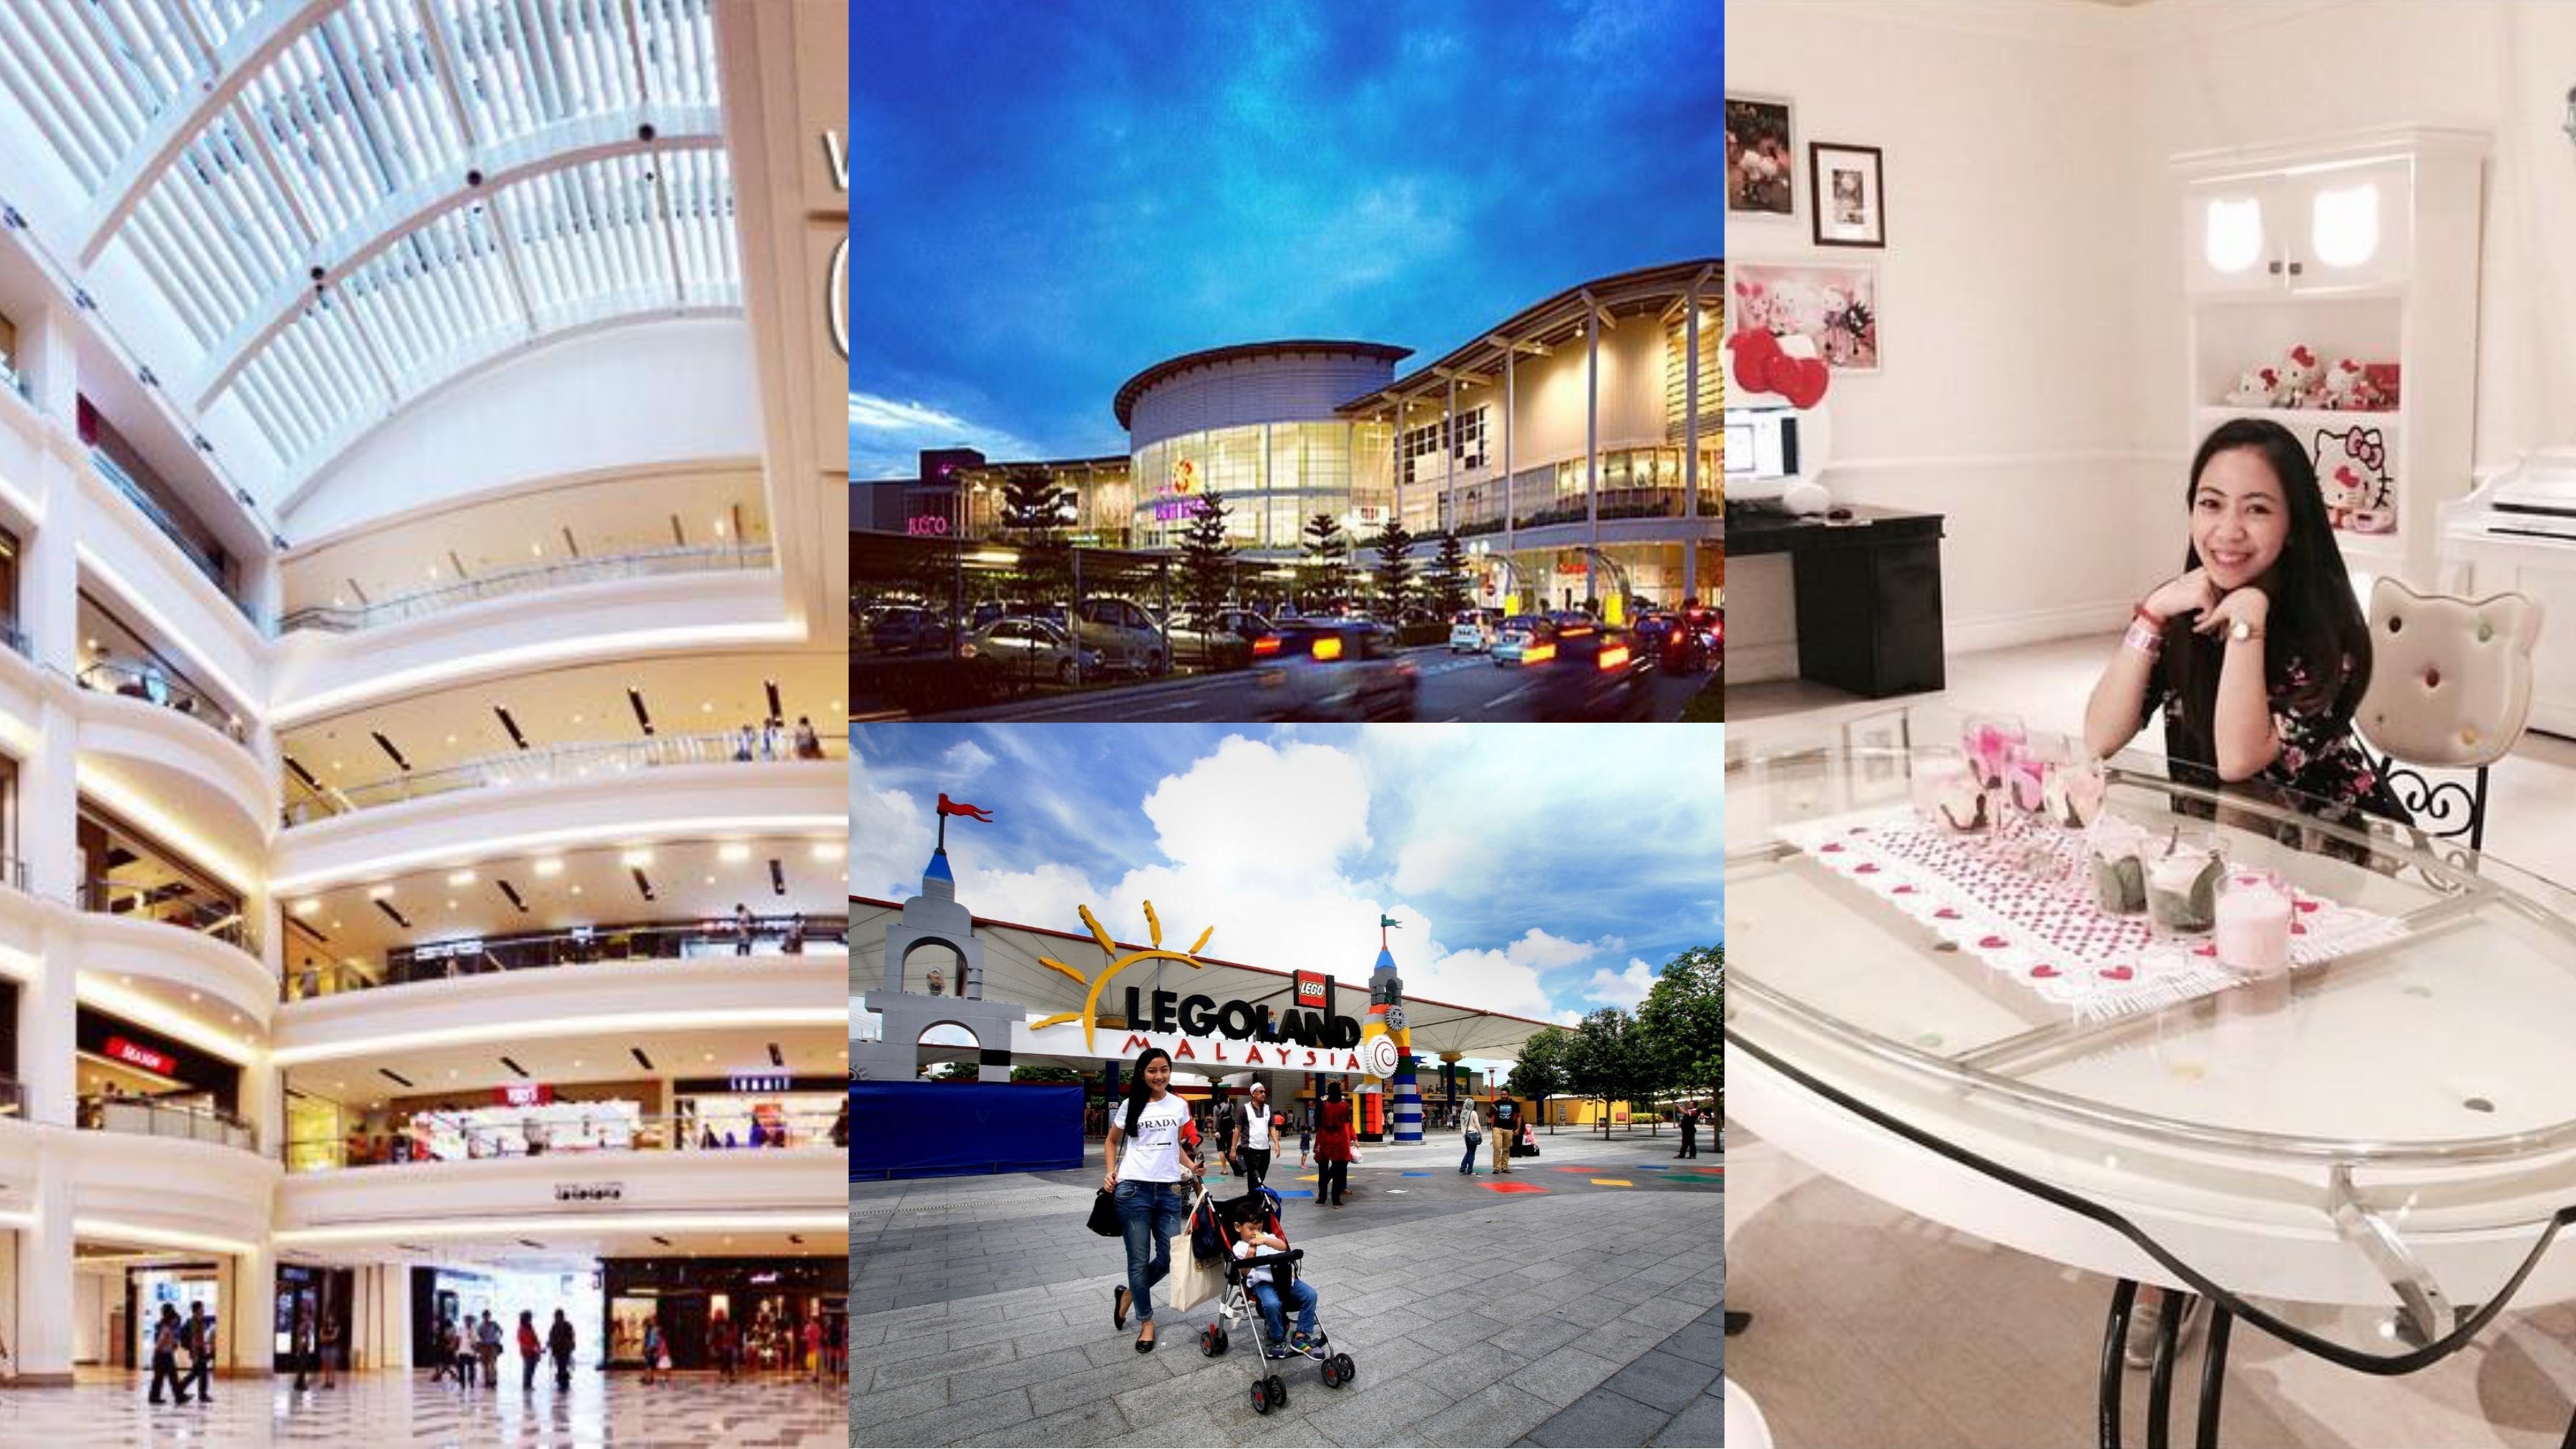 3 Easy Ways: Singapore to Johor Premium Outlet (JPO)